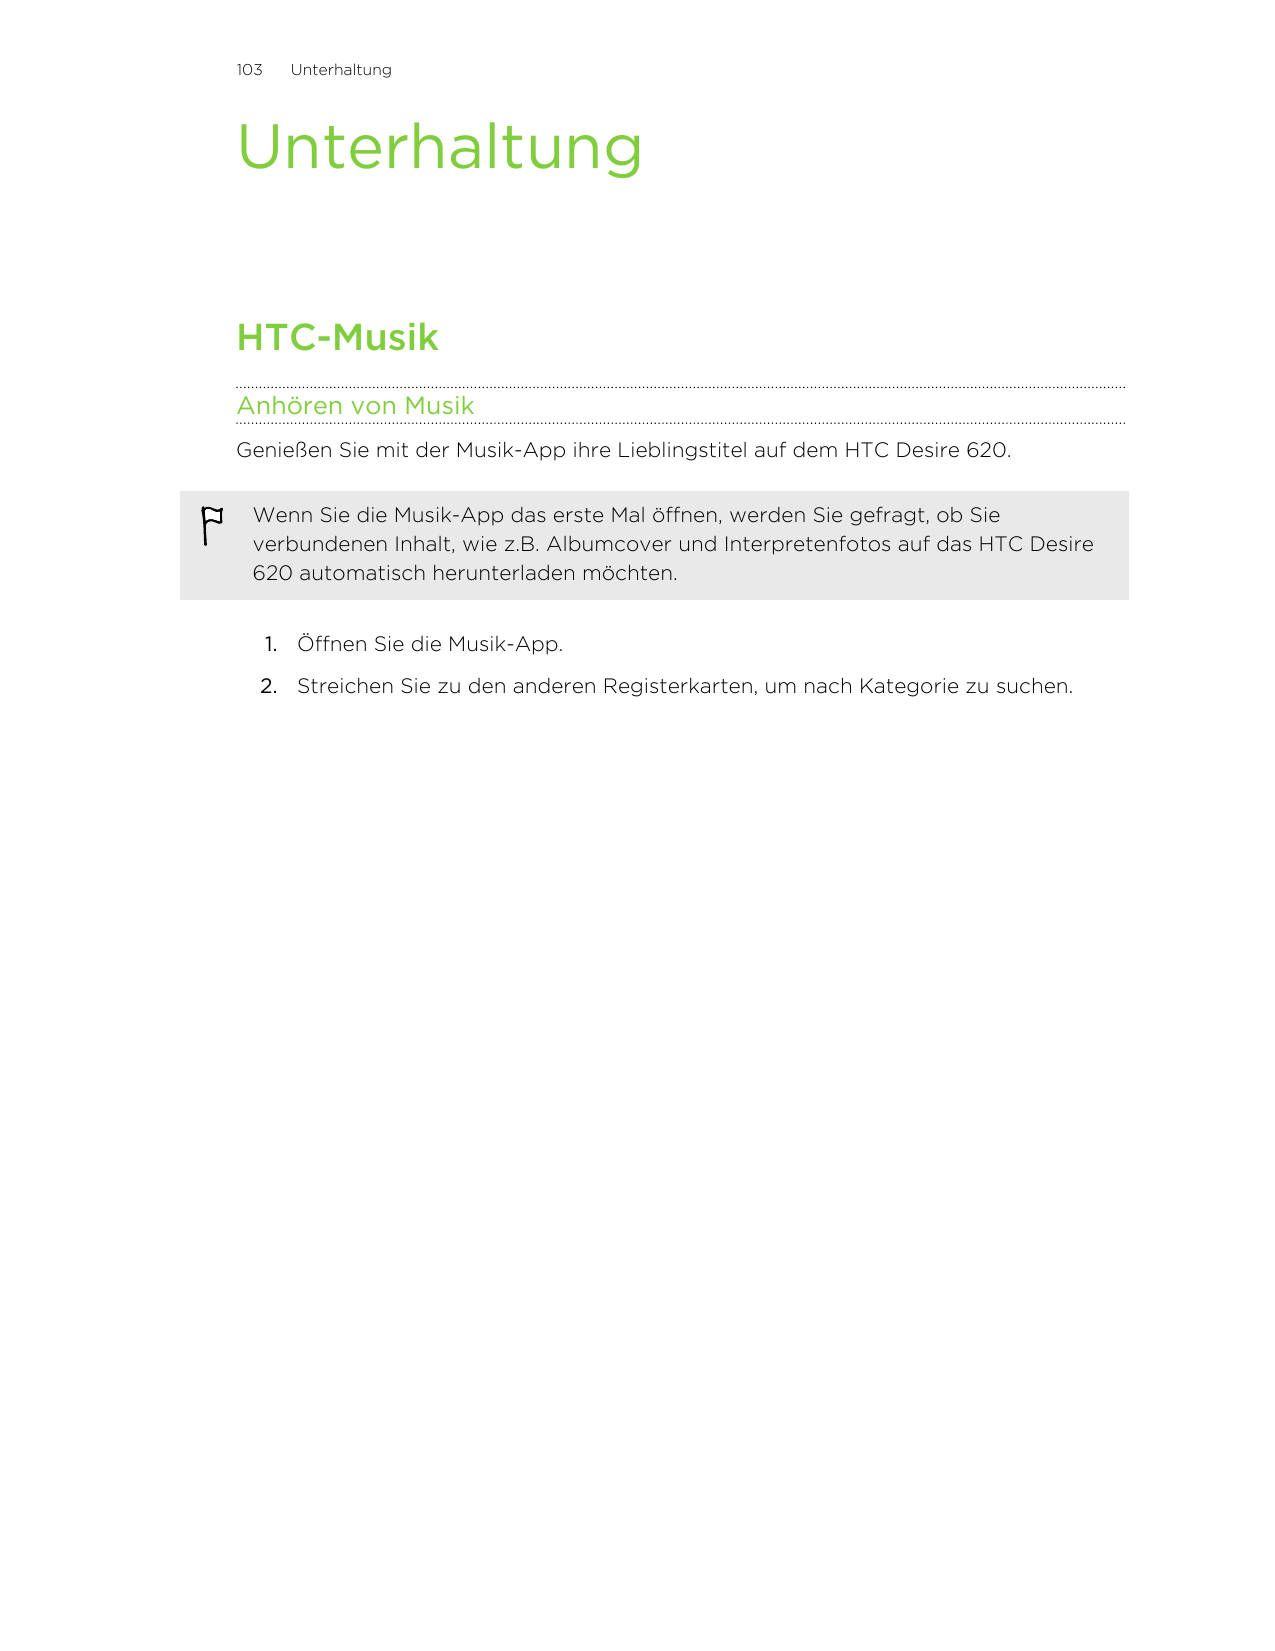 103UnterhaltungUnterhaltungHTC-MusikAnhören von MusikGenießen Sie mit der Musik-App ihre Lieblingstitel auf dem HTC Desire 620.W